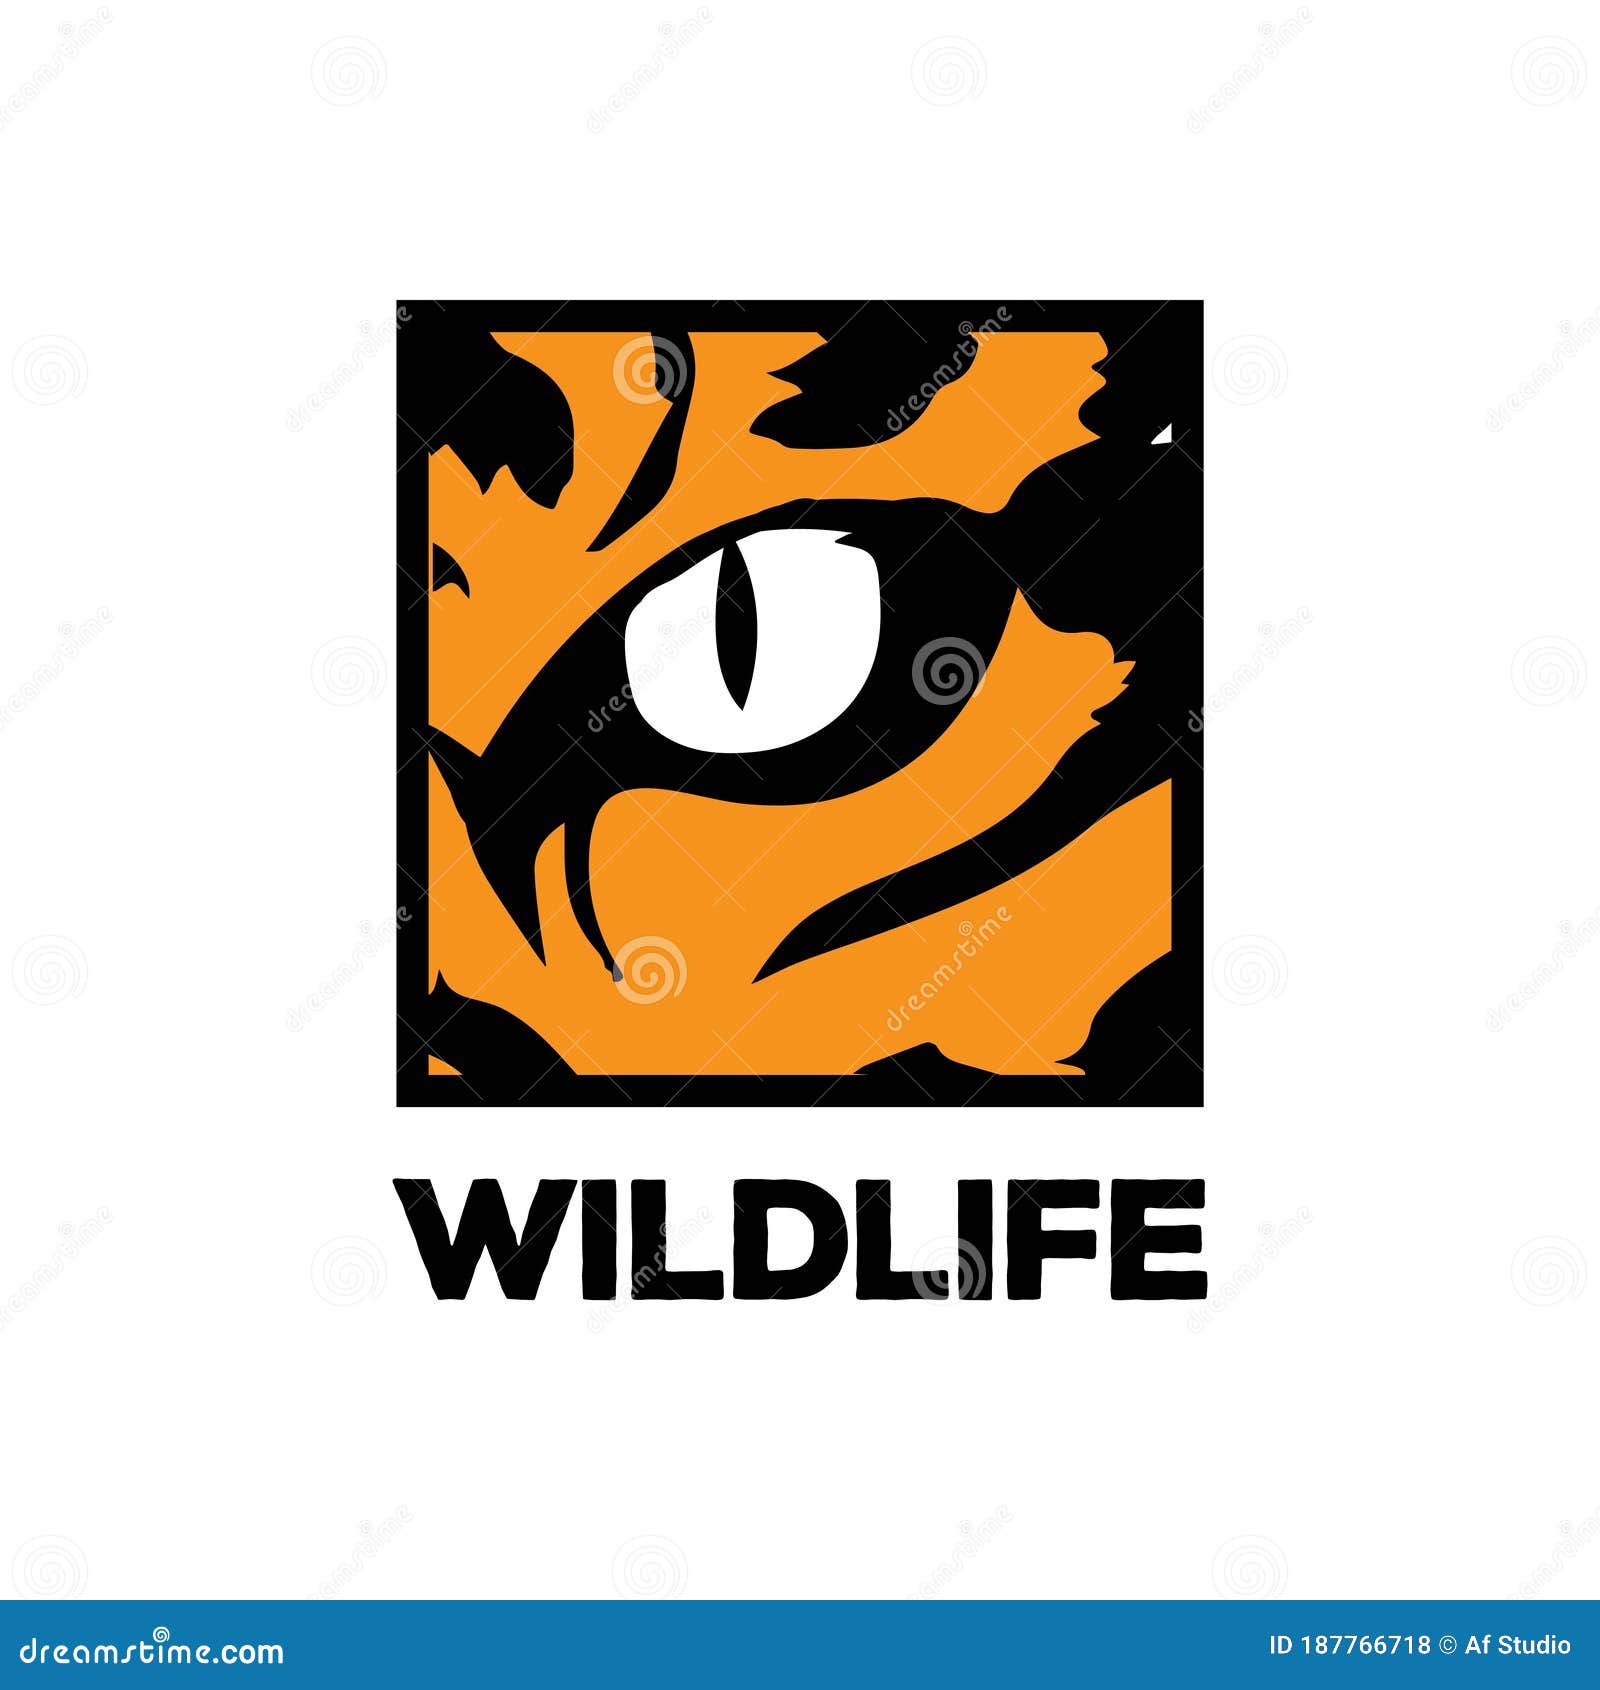 zoo logo design